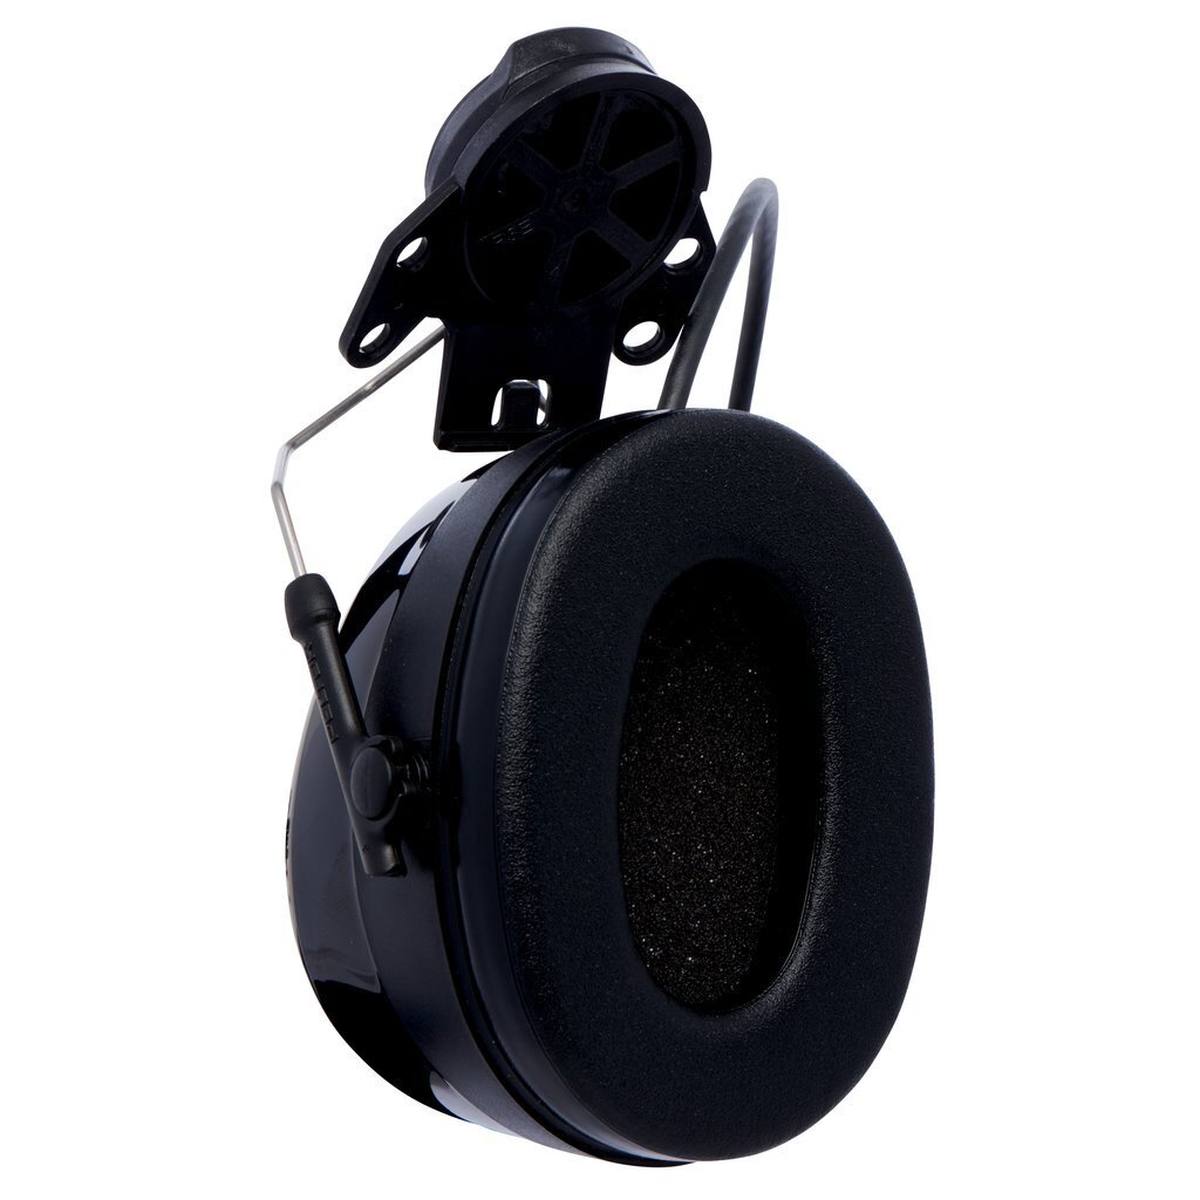 3M PELTOR WorkTunes Pro Cuffie di protezione dell'udito con radio FM, attacco per casco, nero